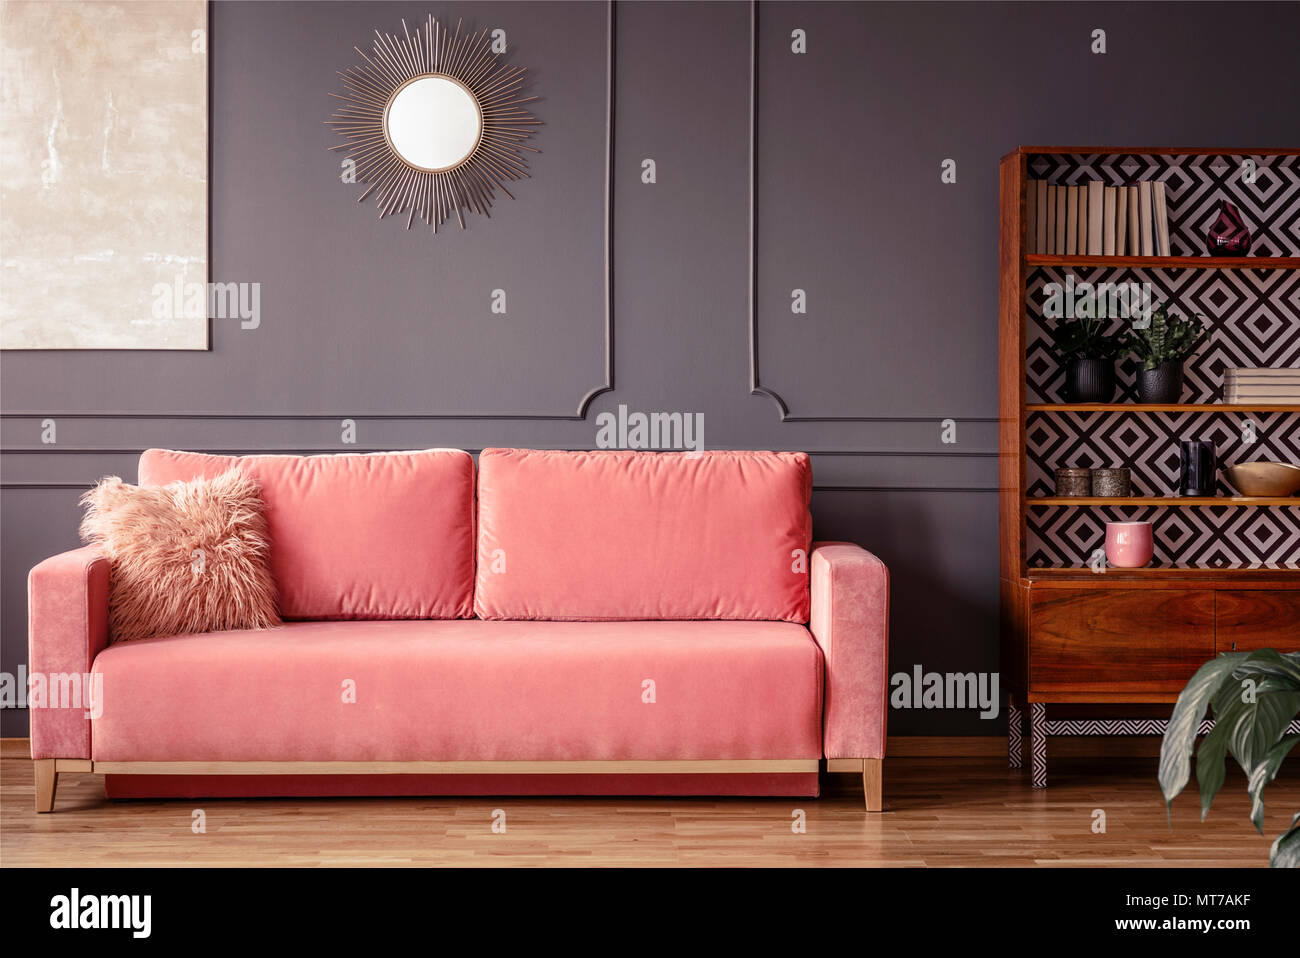 Semplice, rosa divano con una pelliccia cuscino accanto a un armadio in legno in salotto interno con muro grigio e specchio Foto Stock